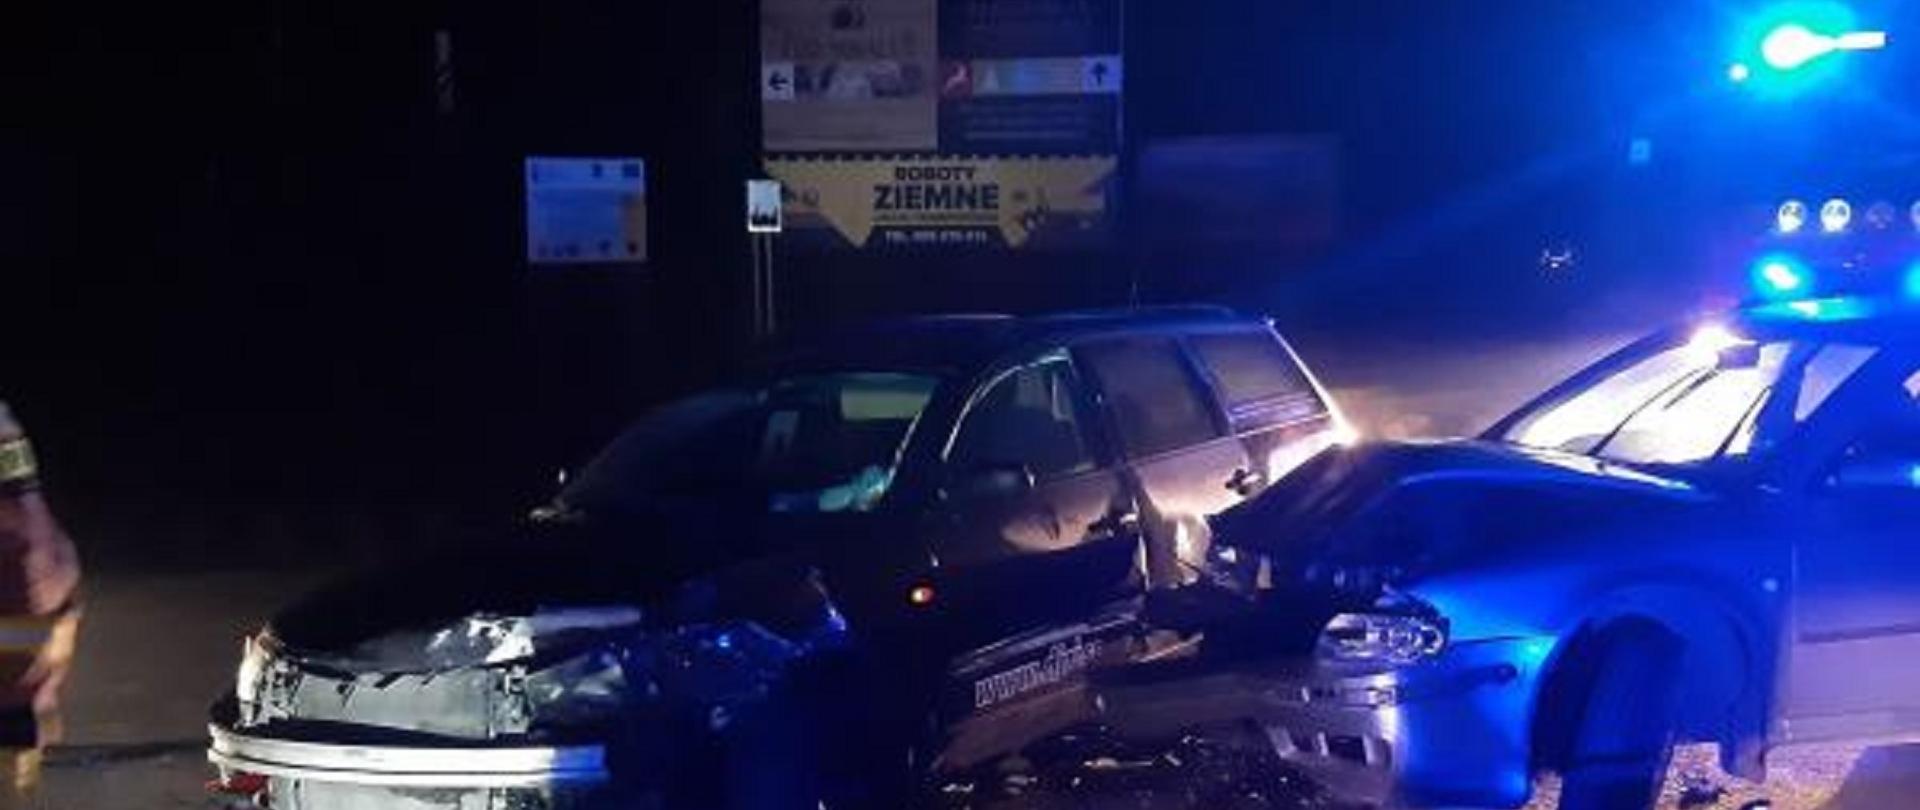 Zdjęcie przedstawia zderzenie dwóch samochodów osobowych w Zakopanem na drodze krajowej nr 47. Zdjęcie zostało wykonane w godzinach wieczornych. W tle reklamy oraz wóz strażacki z Jednostki ratowniczo-gaśniczej w Zakopanem.